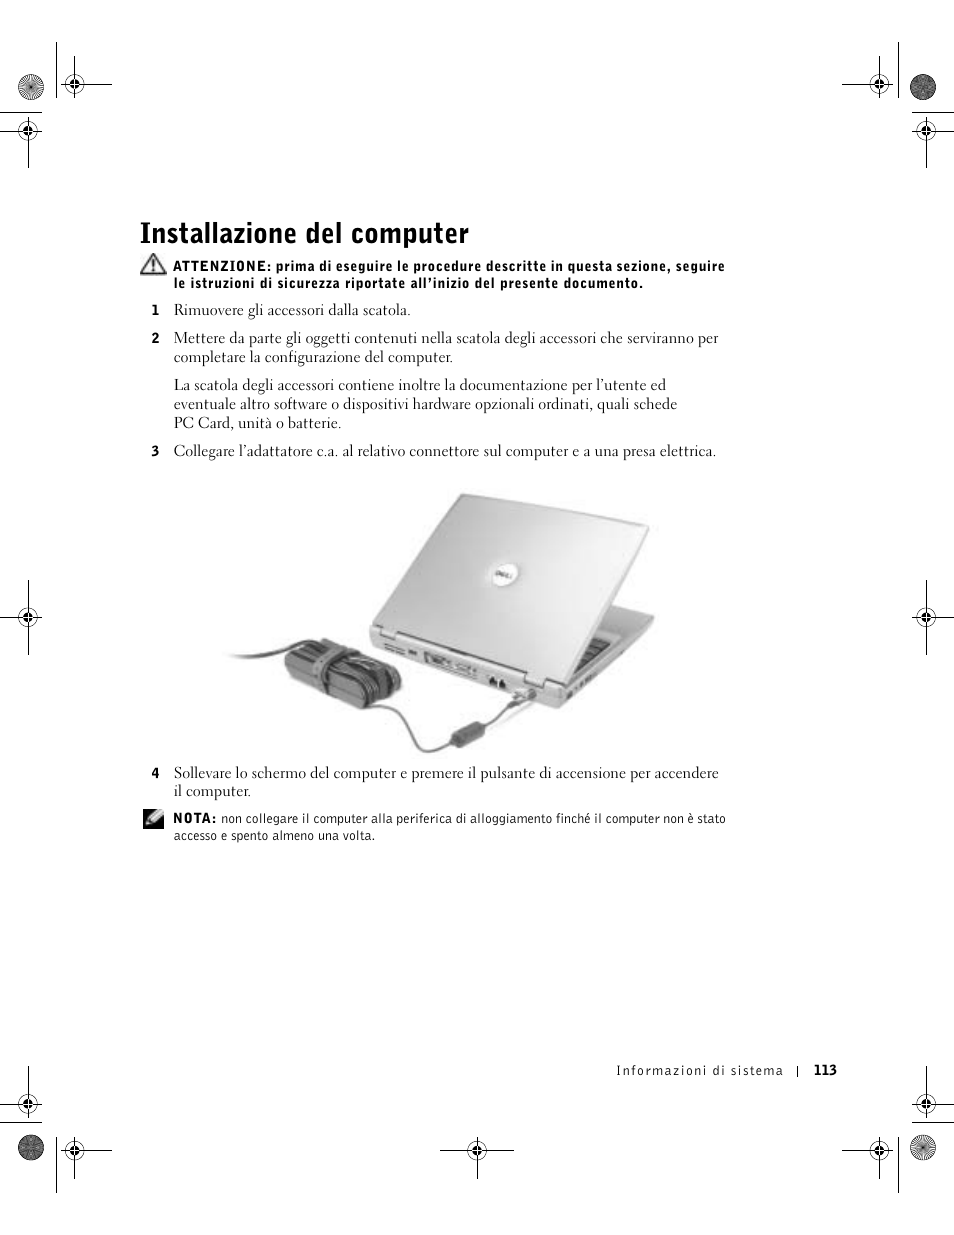 Installazione del computer | Dell LATITUDE D400 User Manual | Page 115 / 178